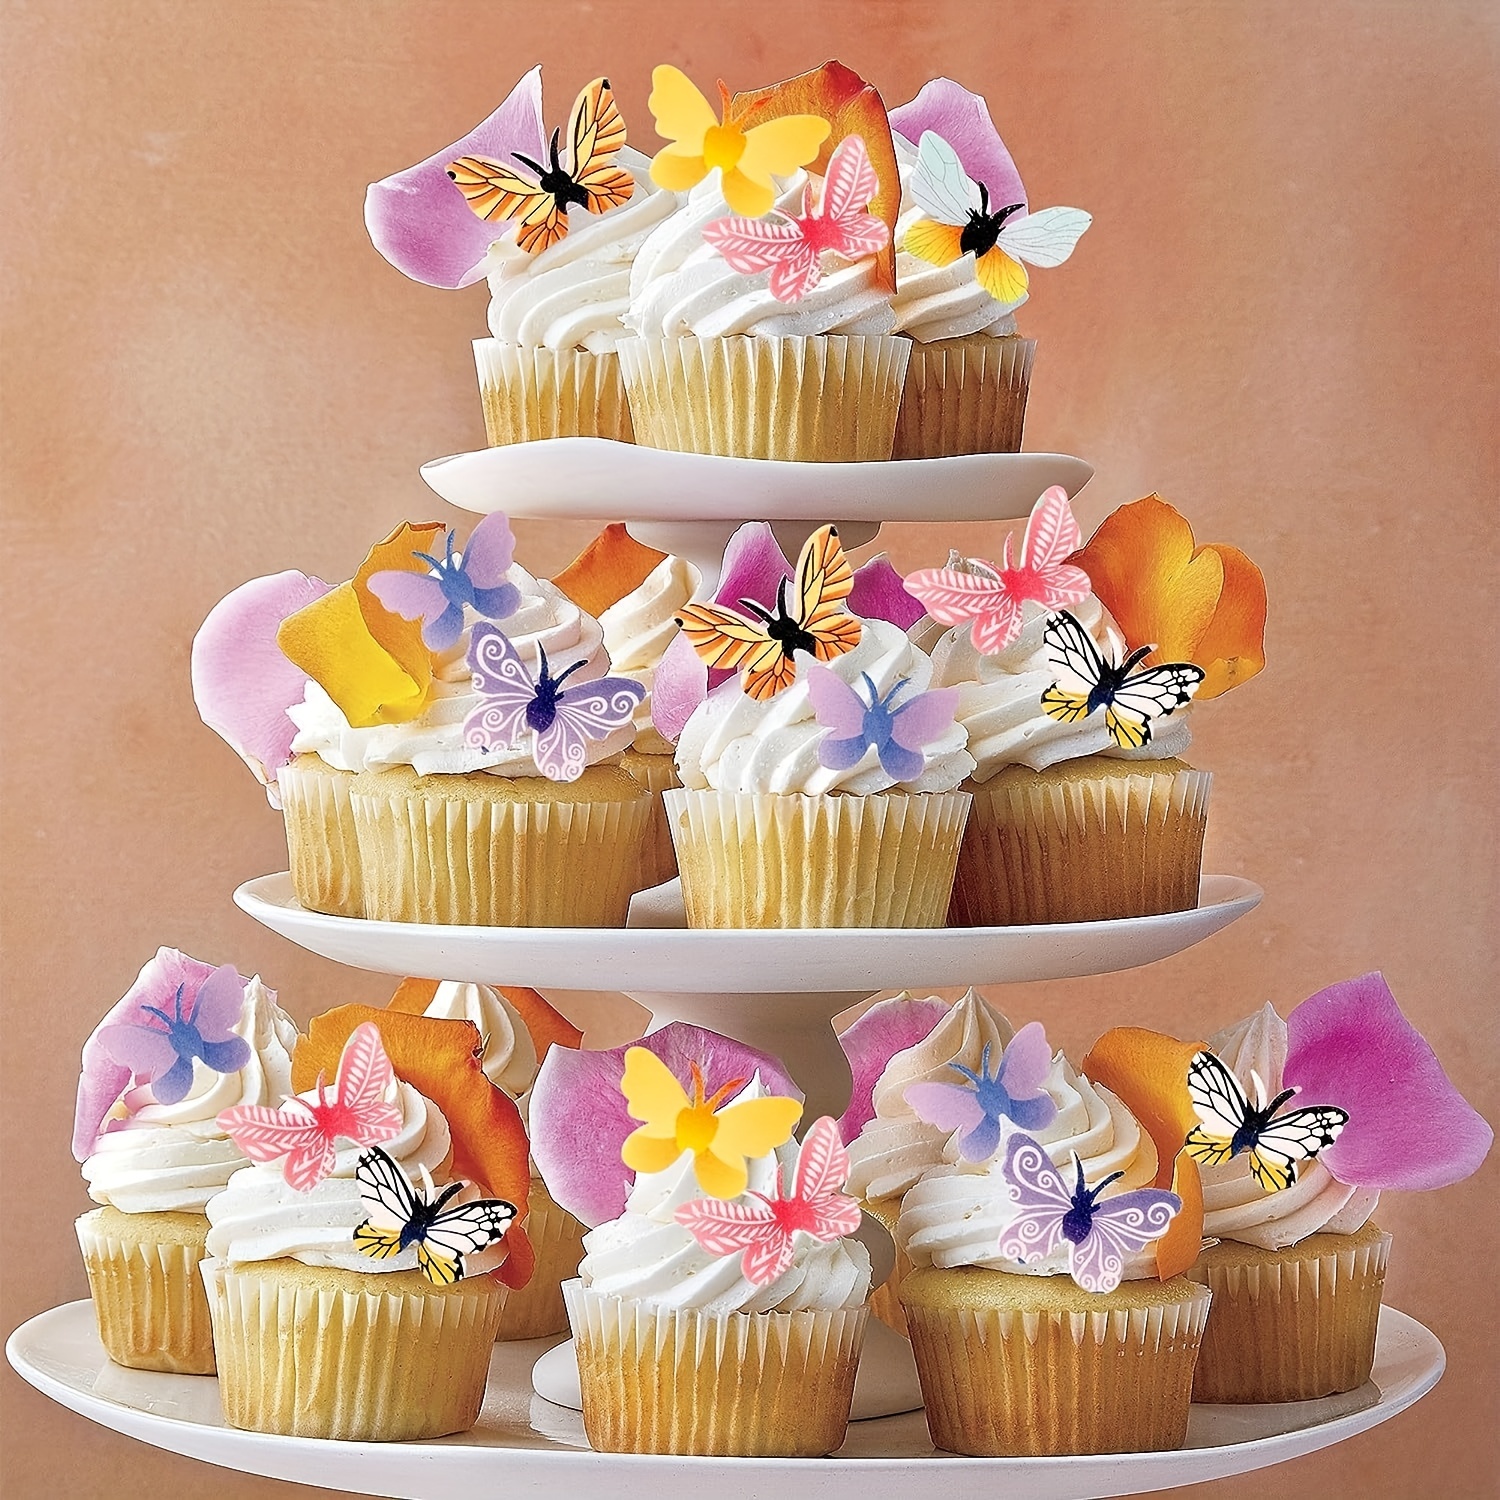 30 adornos comestibles para cupcakes – Colección temática musical de  secundaria de decoraciones comestibles para tartas | Impresiones  comestibles sin